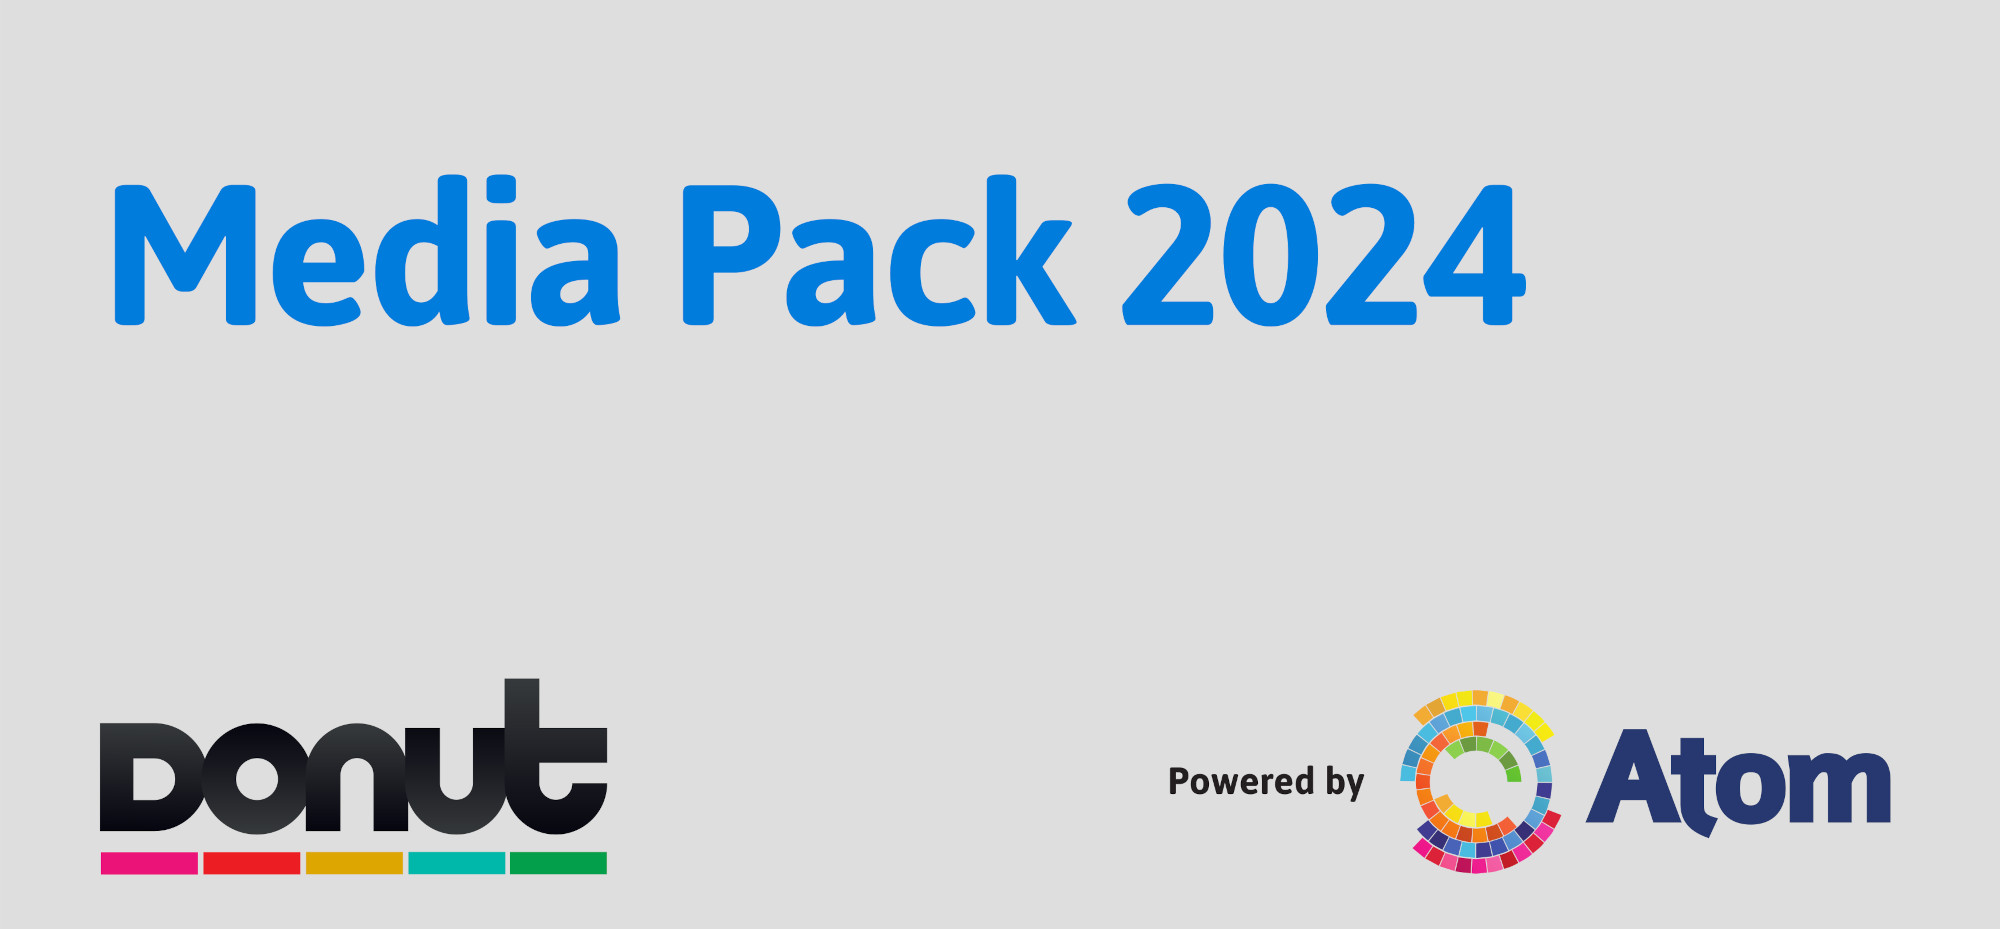 Atom media pack 2024